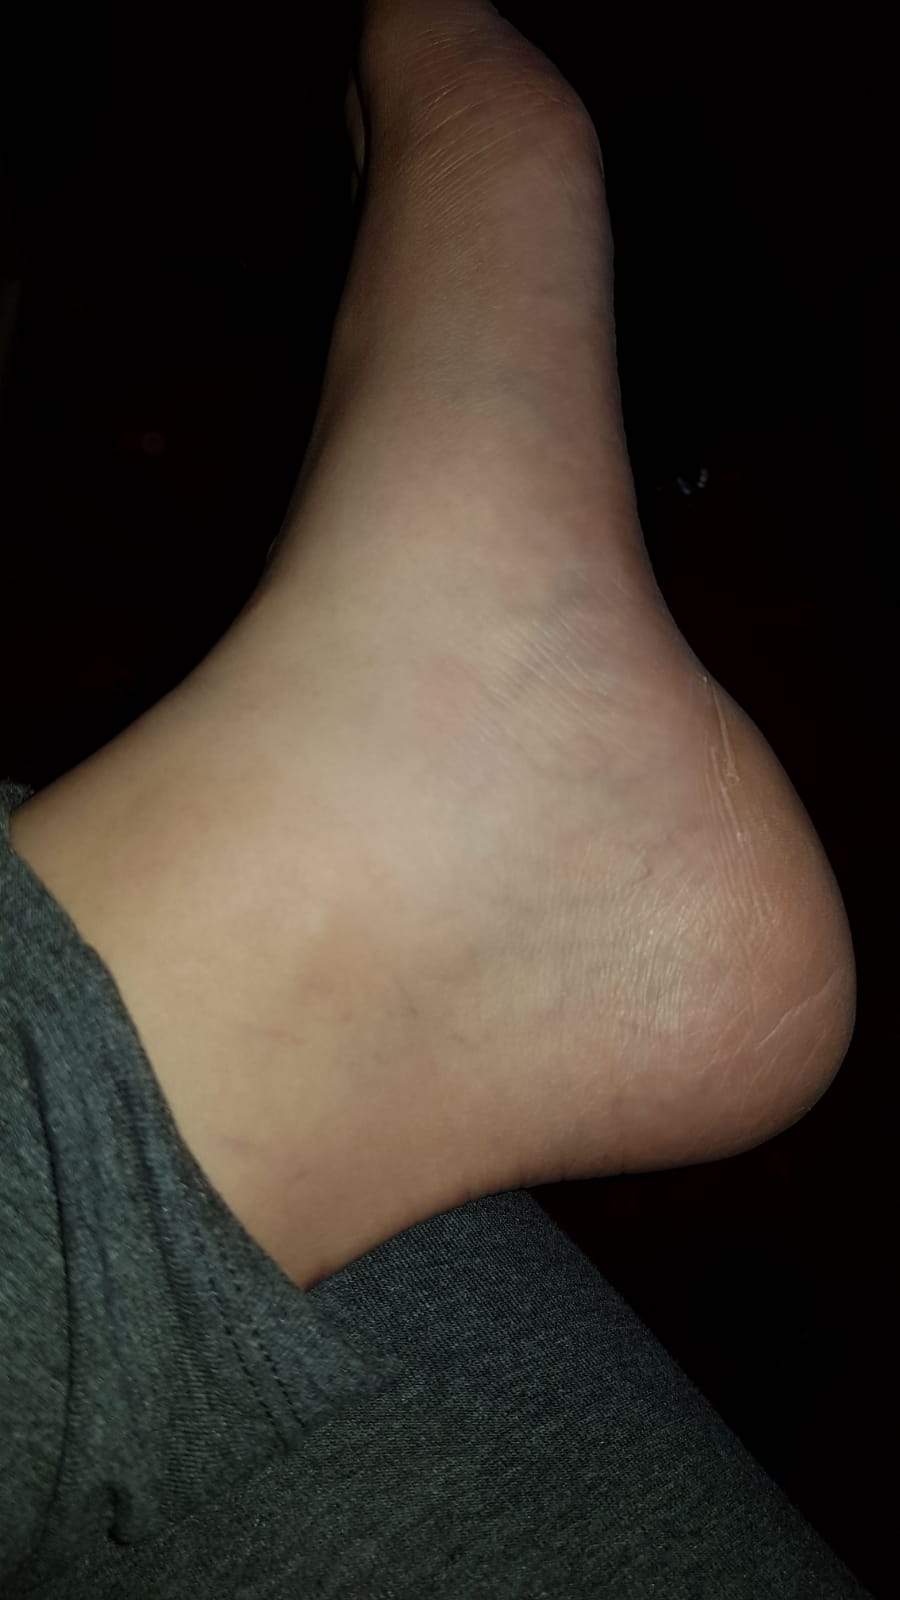 Ist mein Fuß gezerrt oder ist etwas gerissen? (Schmerzen, knöchel)